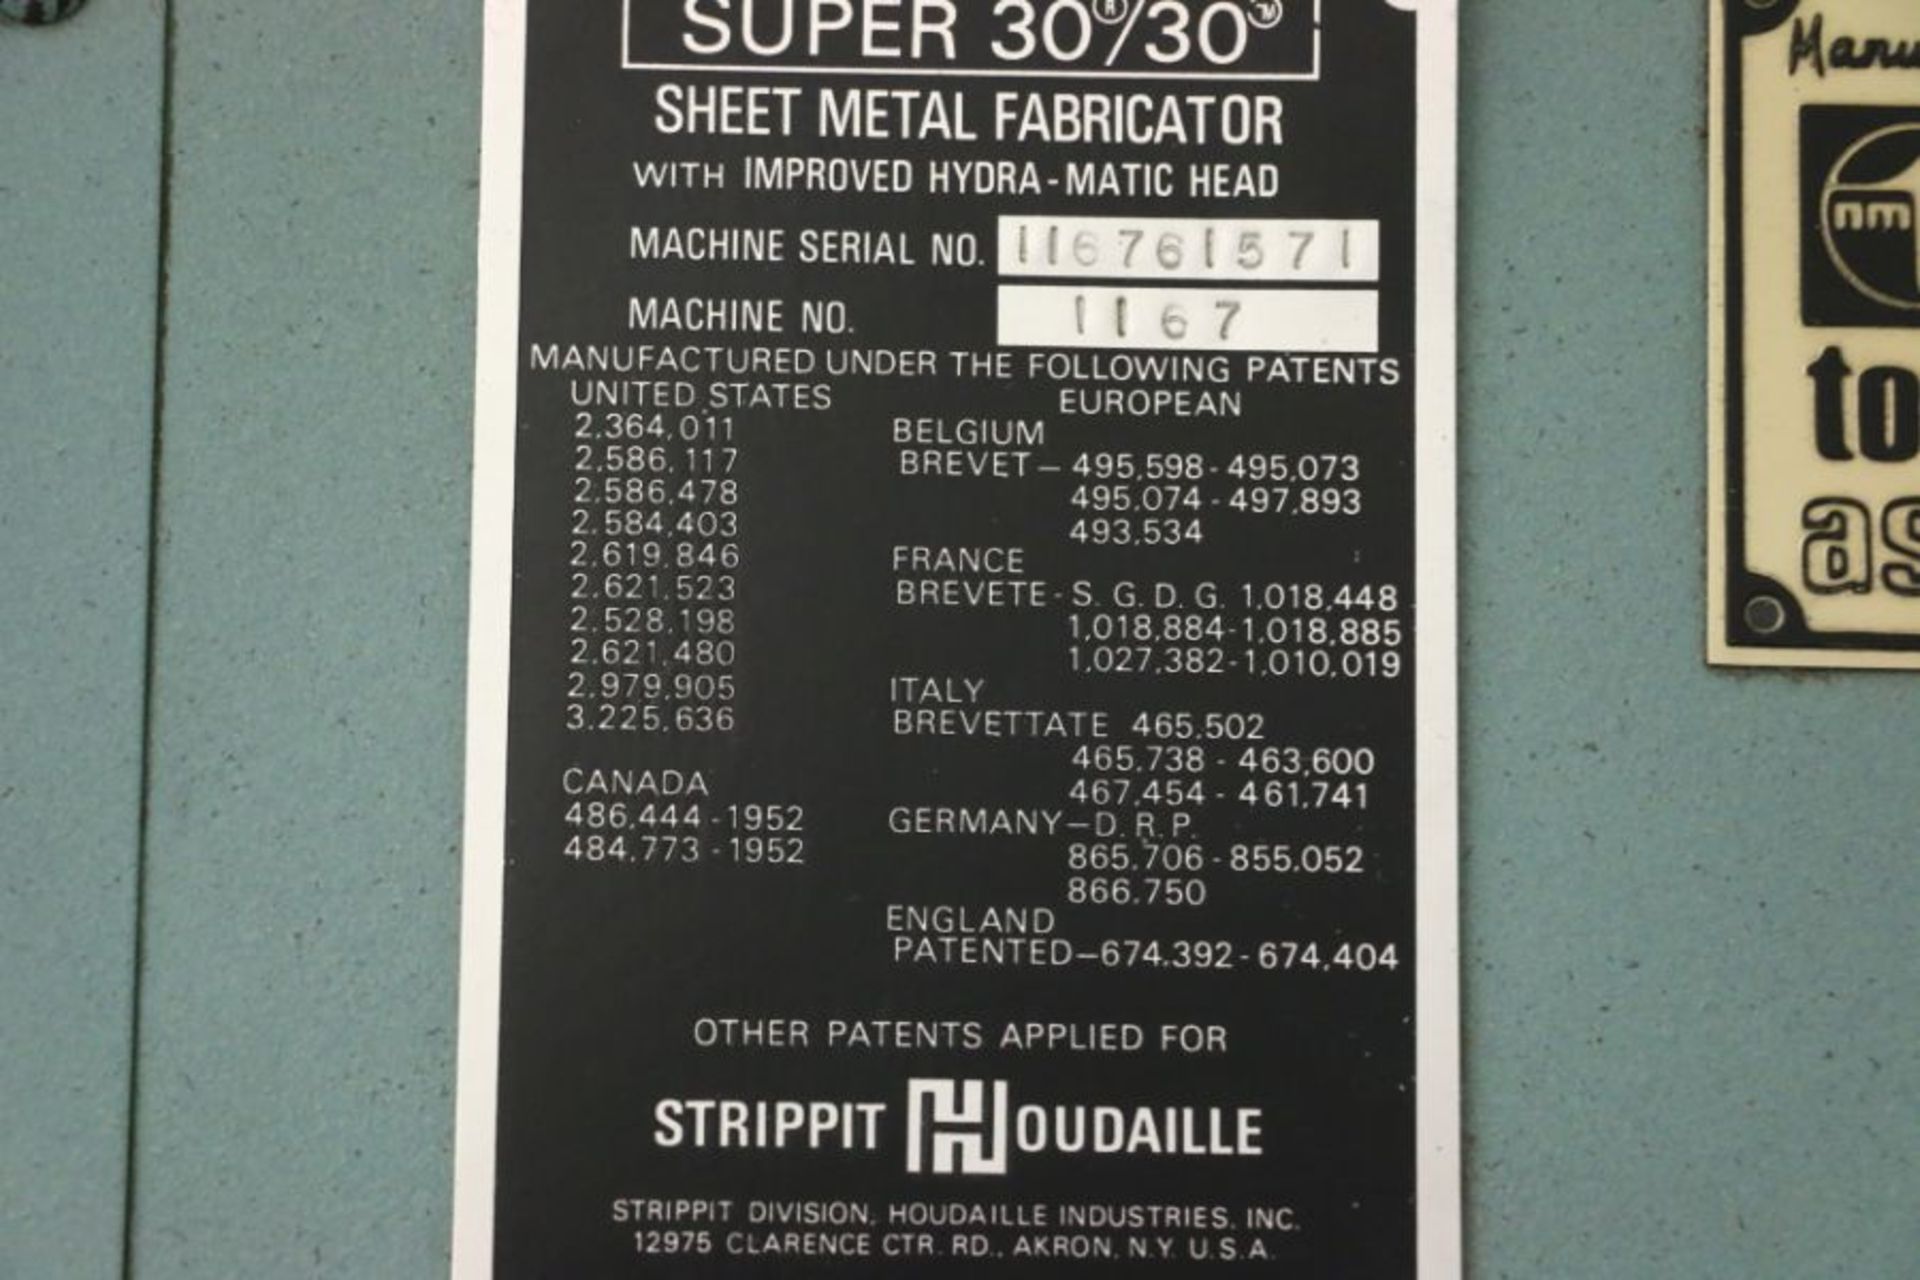 Strippit Super 30/30 Single End Punch Press, s/n 116761571 - Image 5 of 6